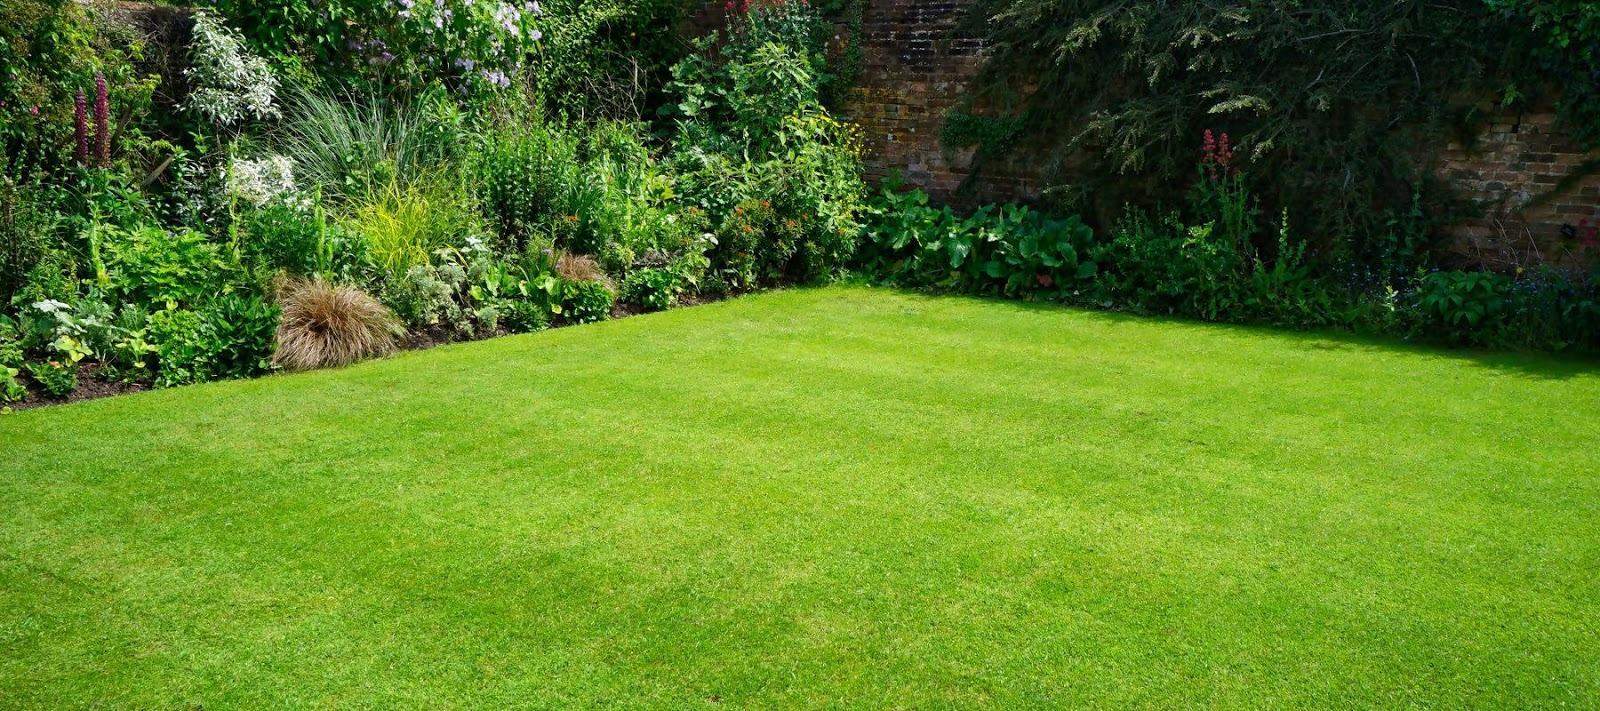 Hình ảnh thảm cỏ xanh đẹp trong sân vườn